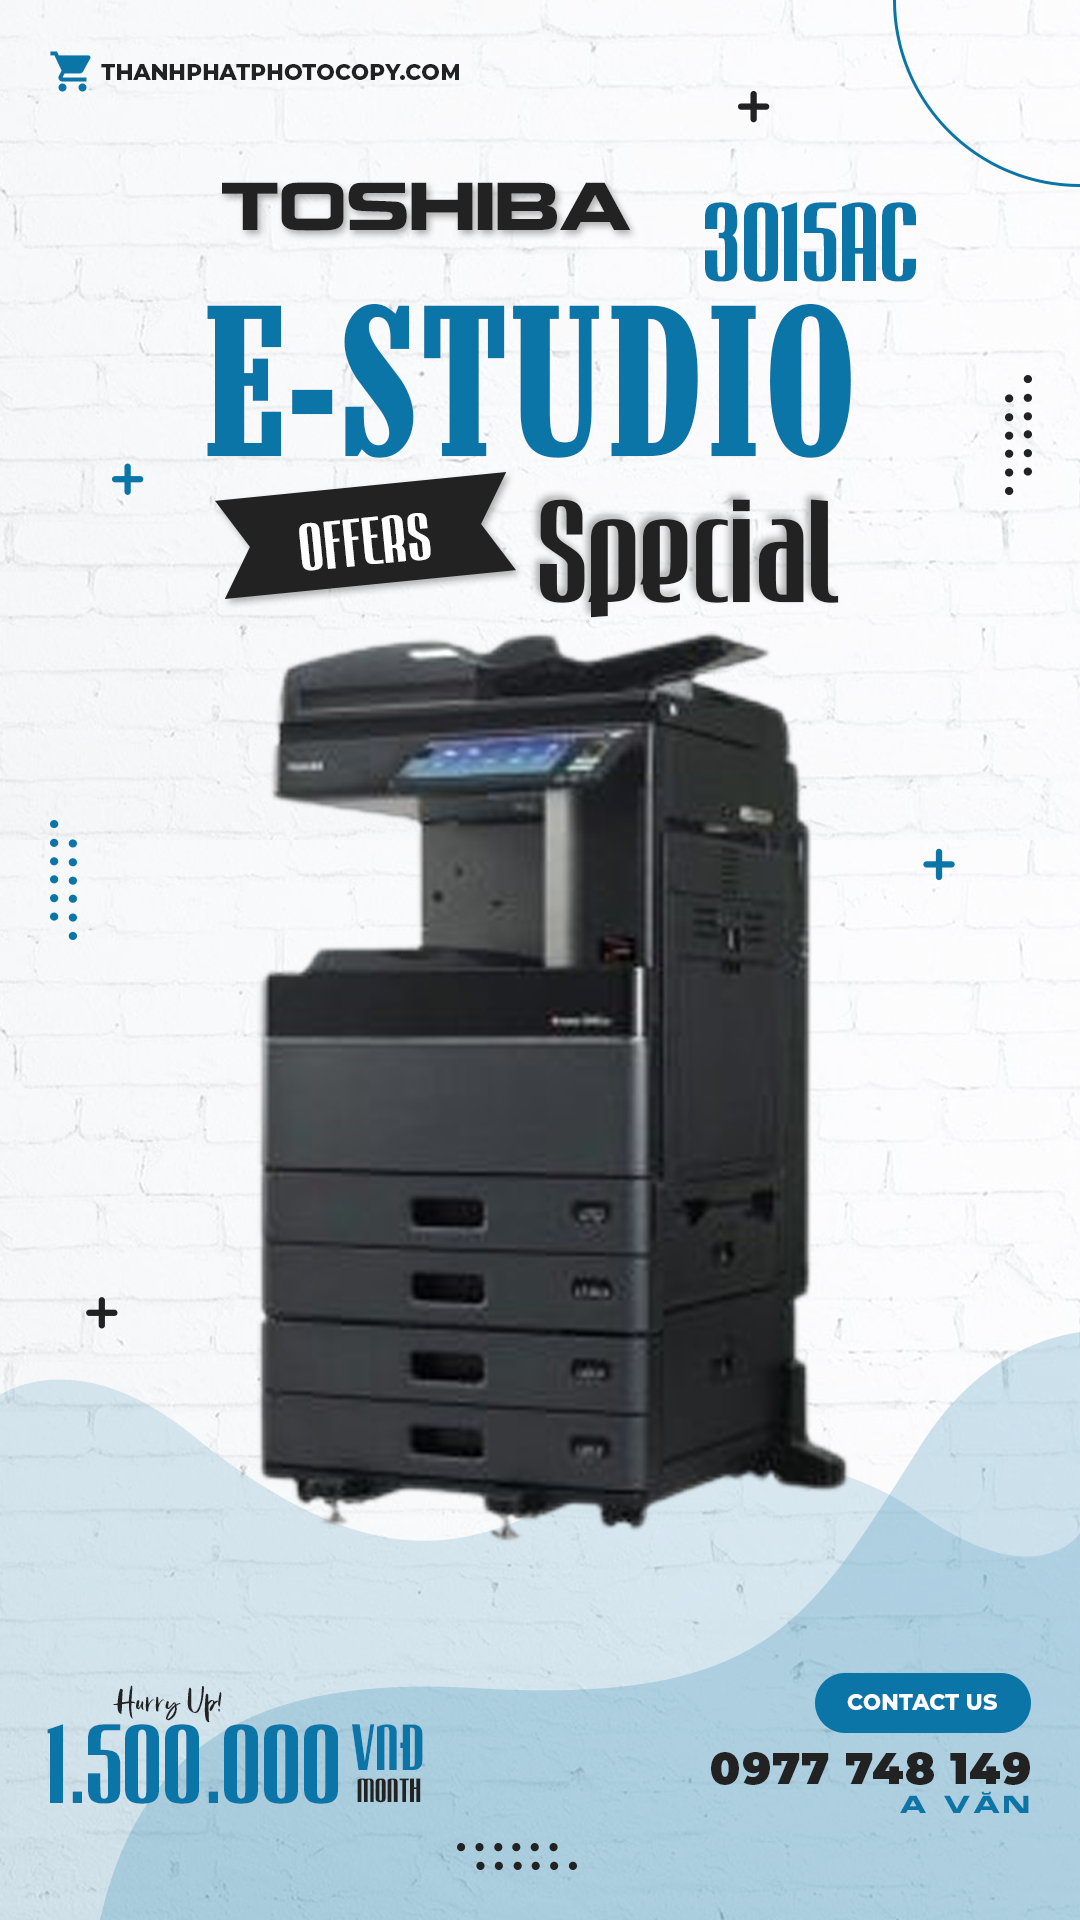 thuê máy photocopy màu 3015ac giá rẻ chỉ 1.500.000 vnđ